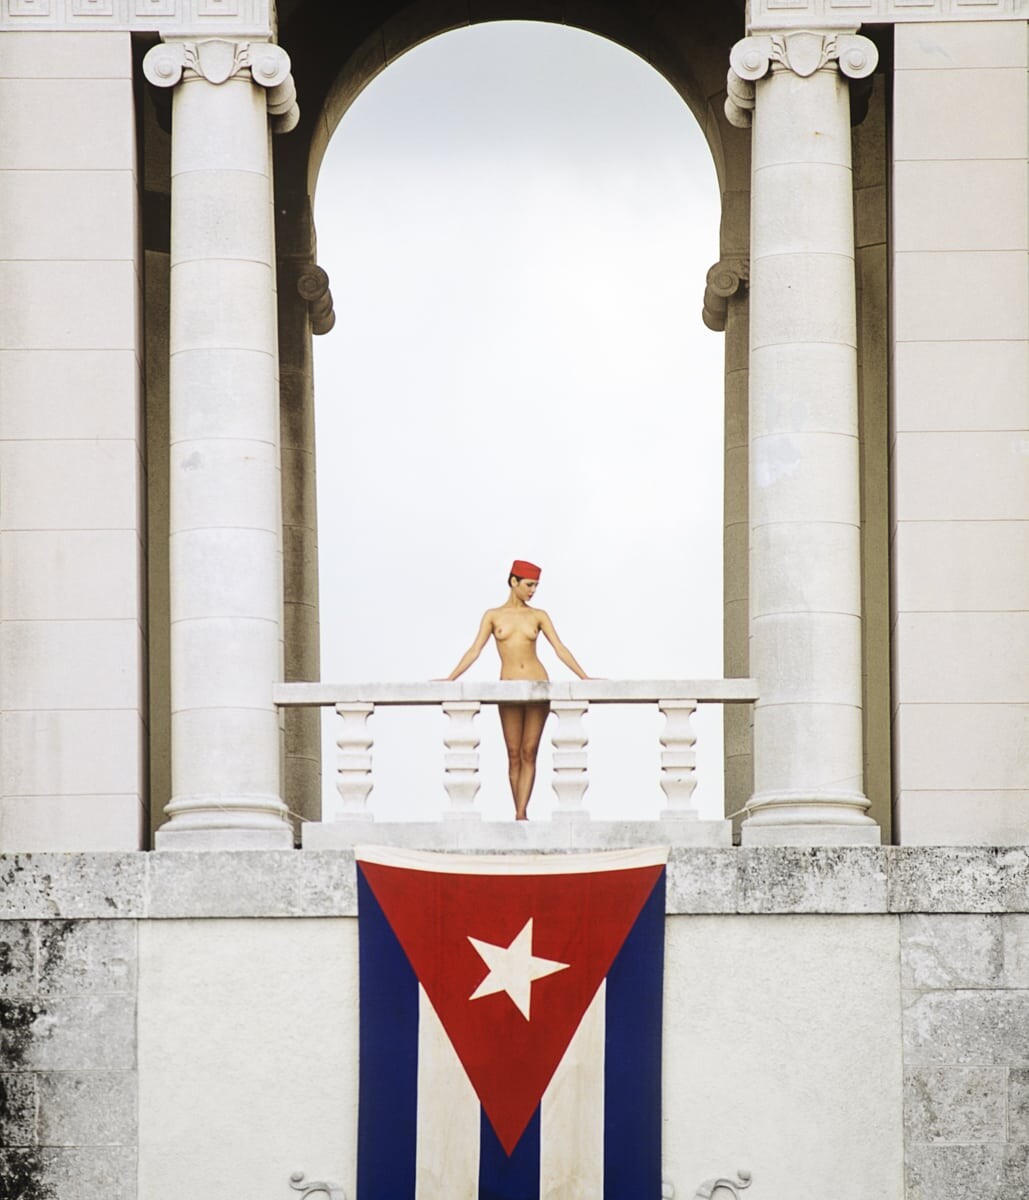 Отель Насьональ, Гавана, 1993. Фотограф Патрик Личфилд